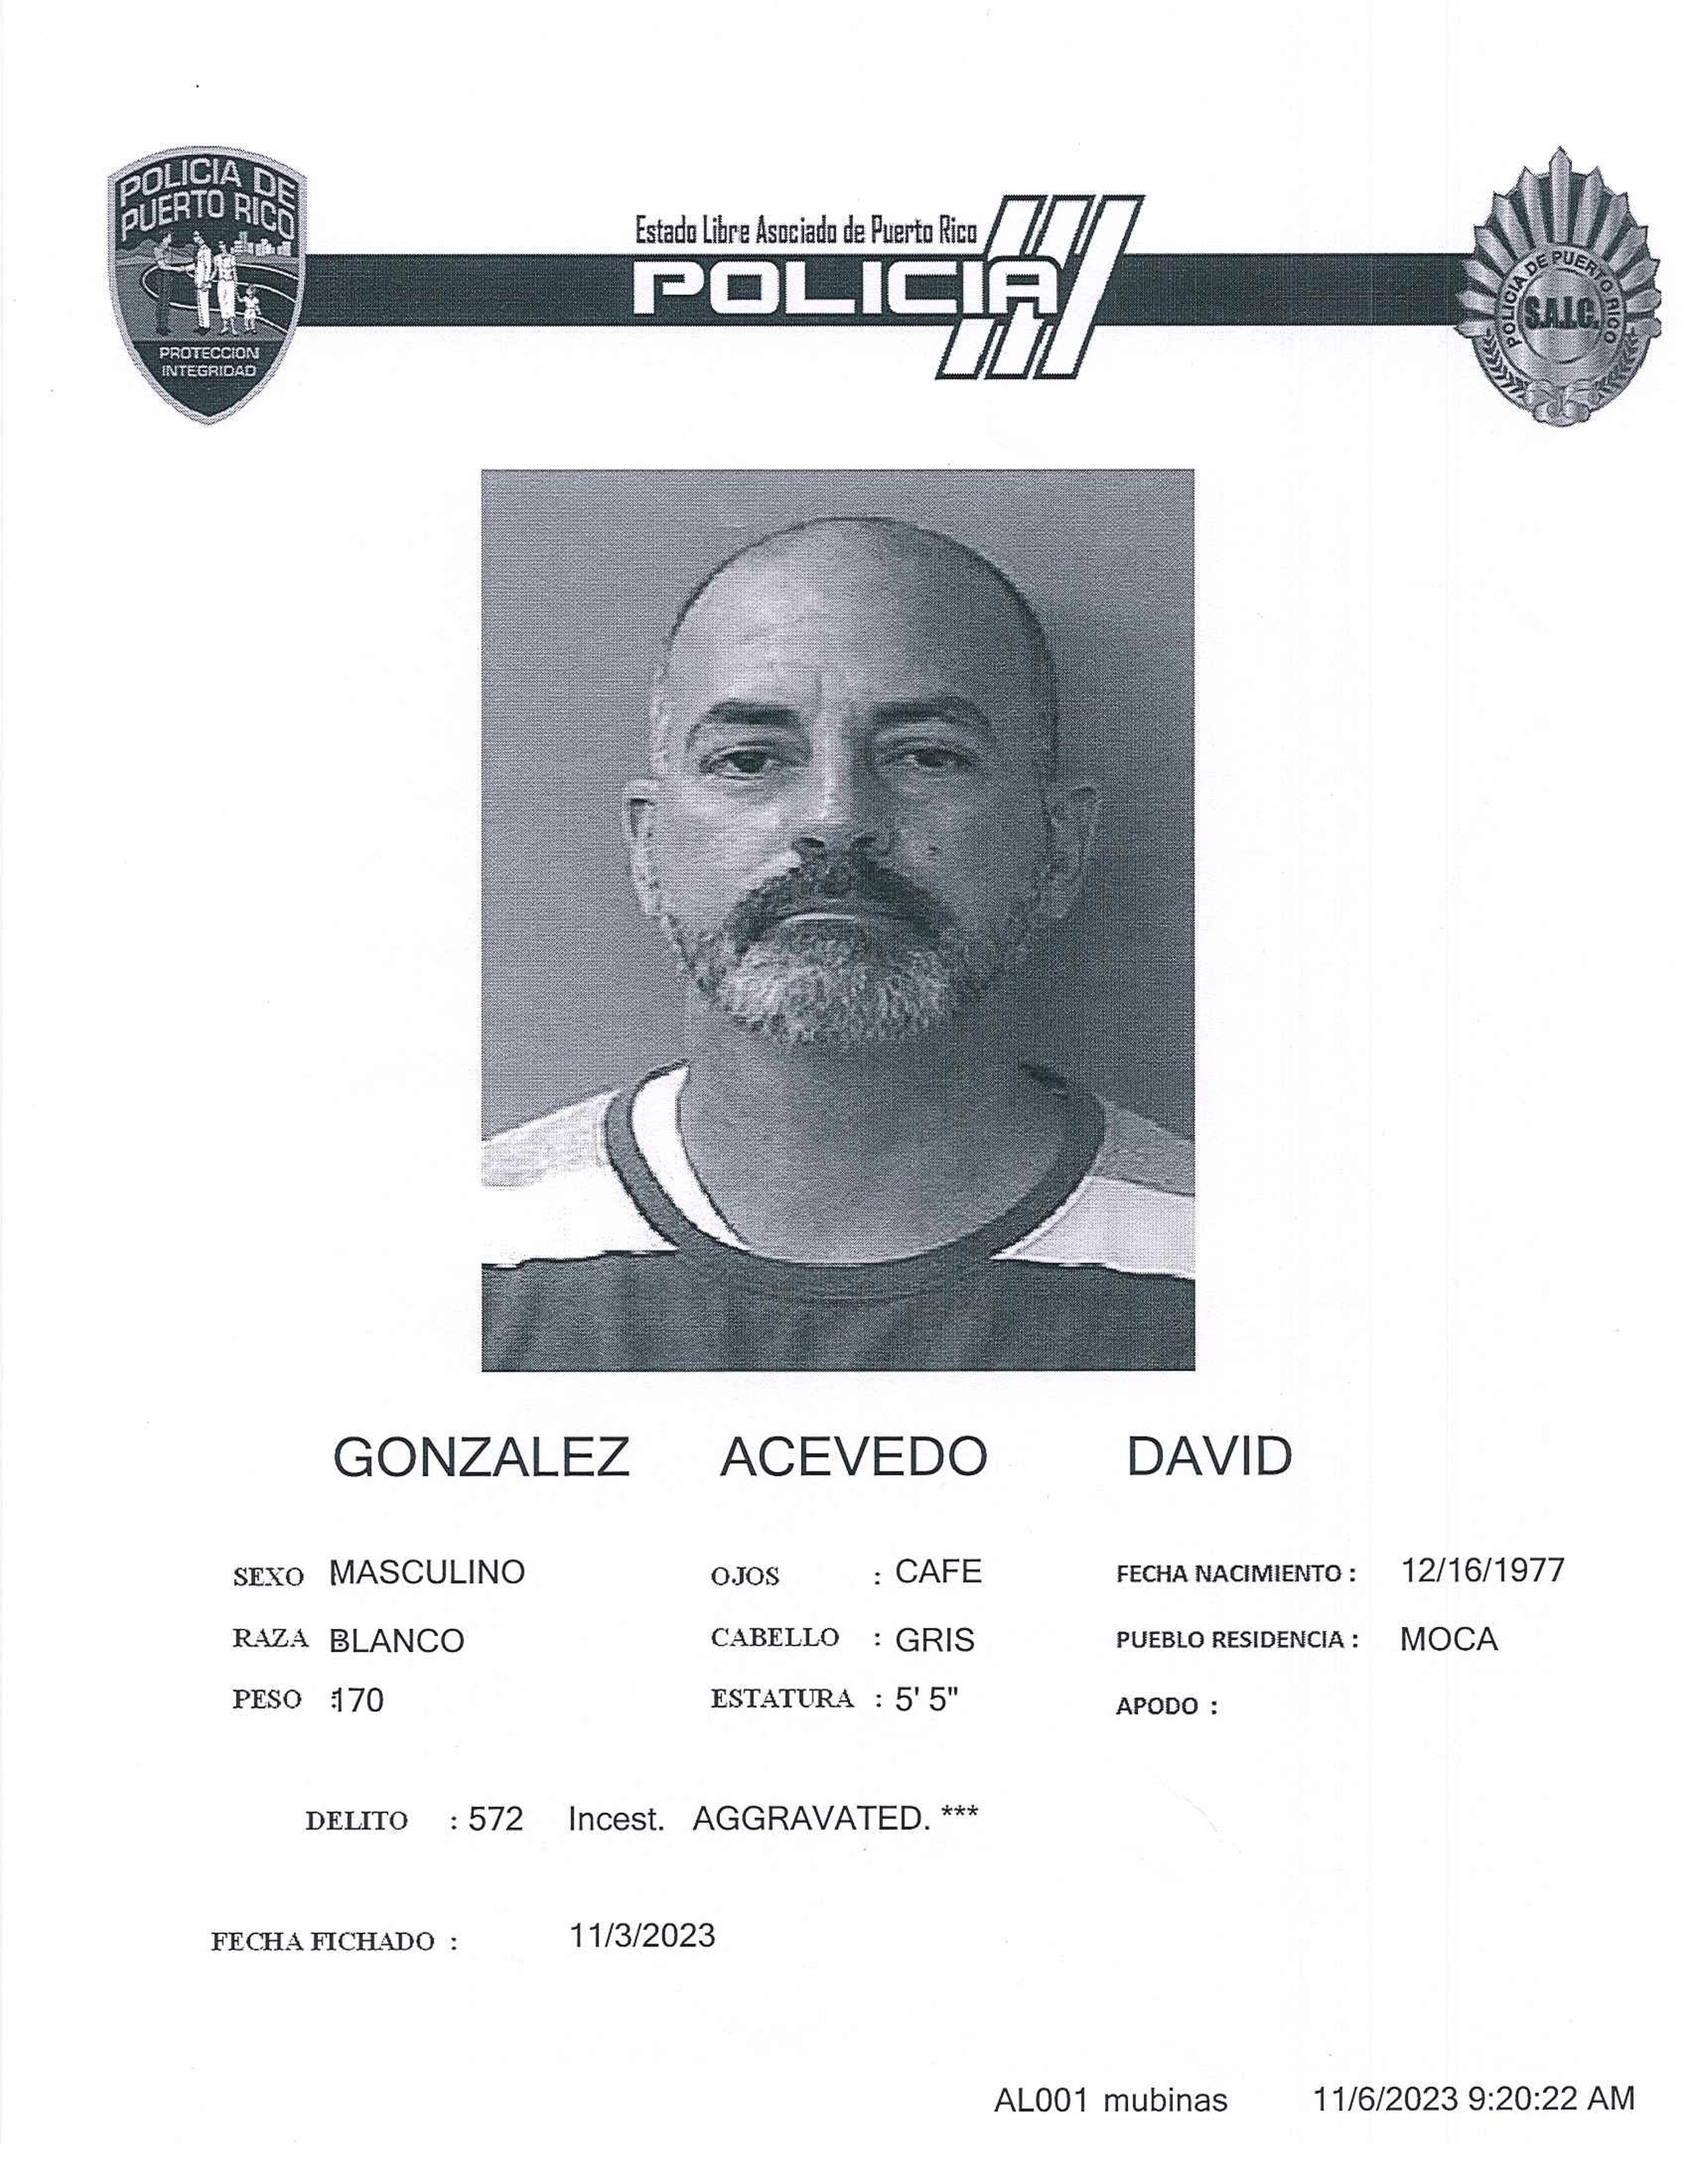 Ficha policial de David González Acevedo, acusado de agresión sexual y actos lascivos.